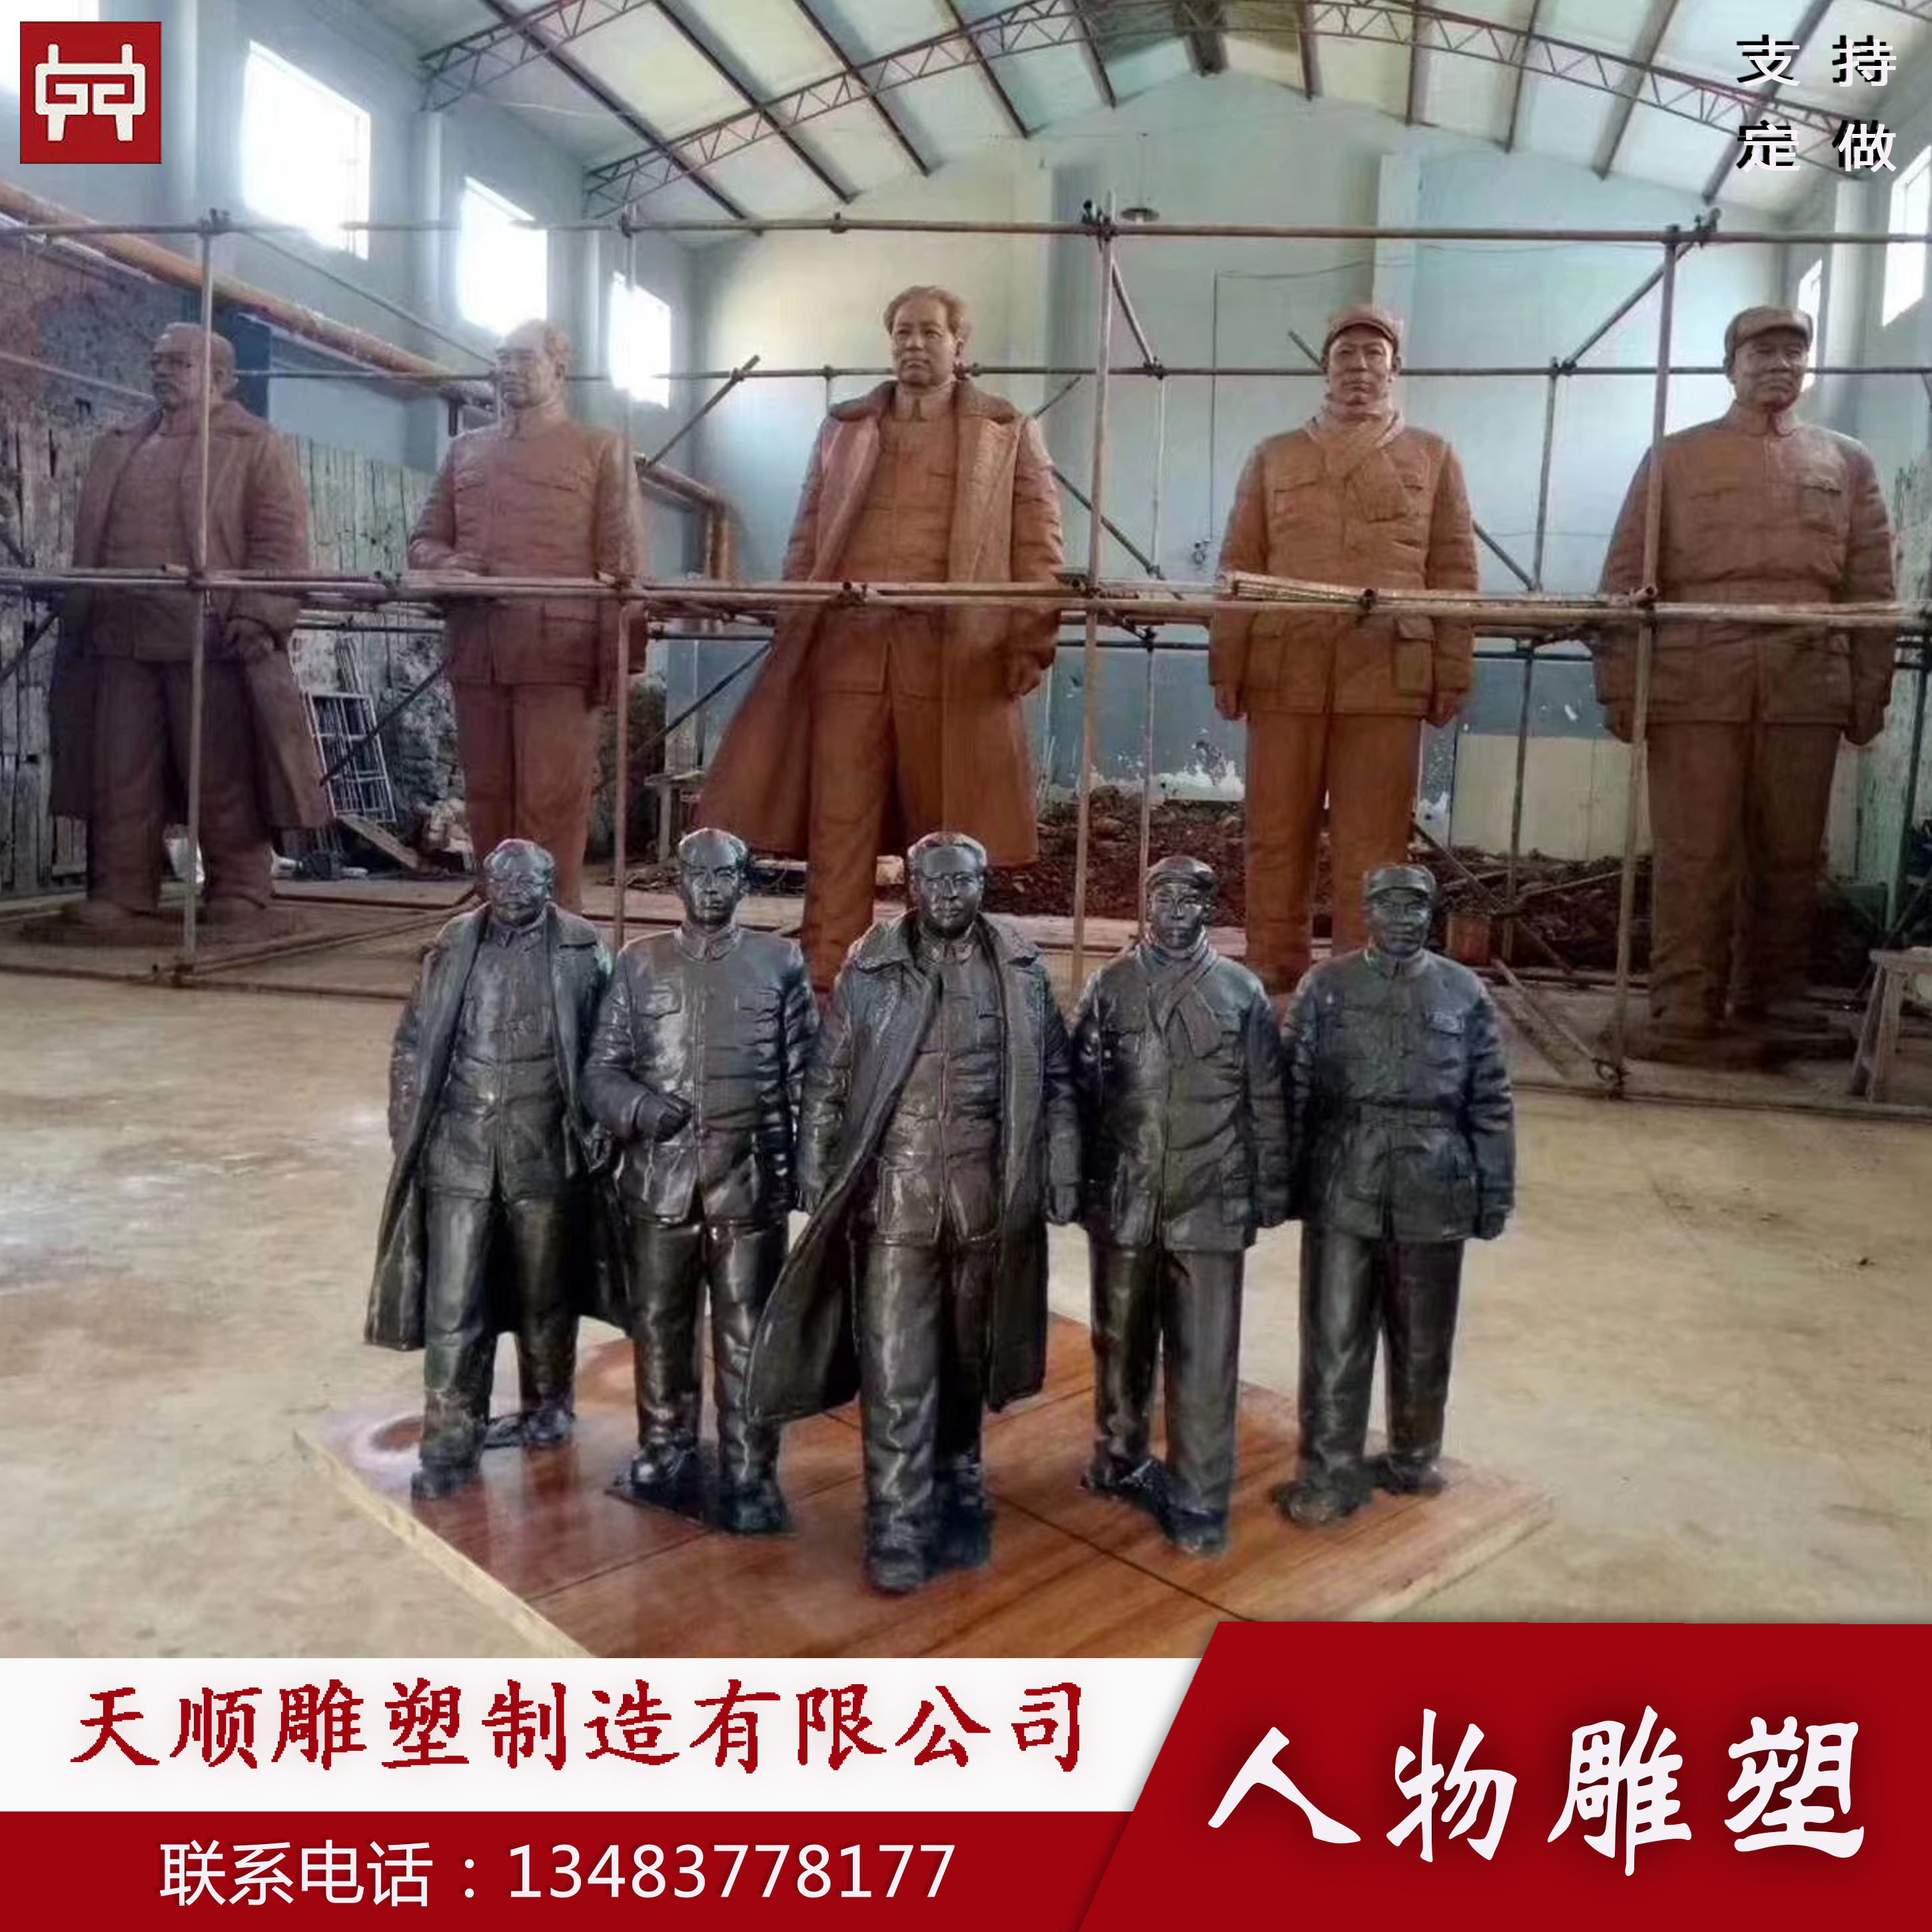 毛主席伟人铜像制作厂家河北天顺雕塑图片